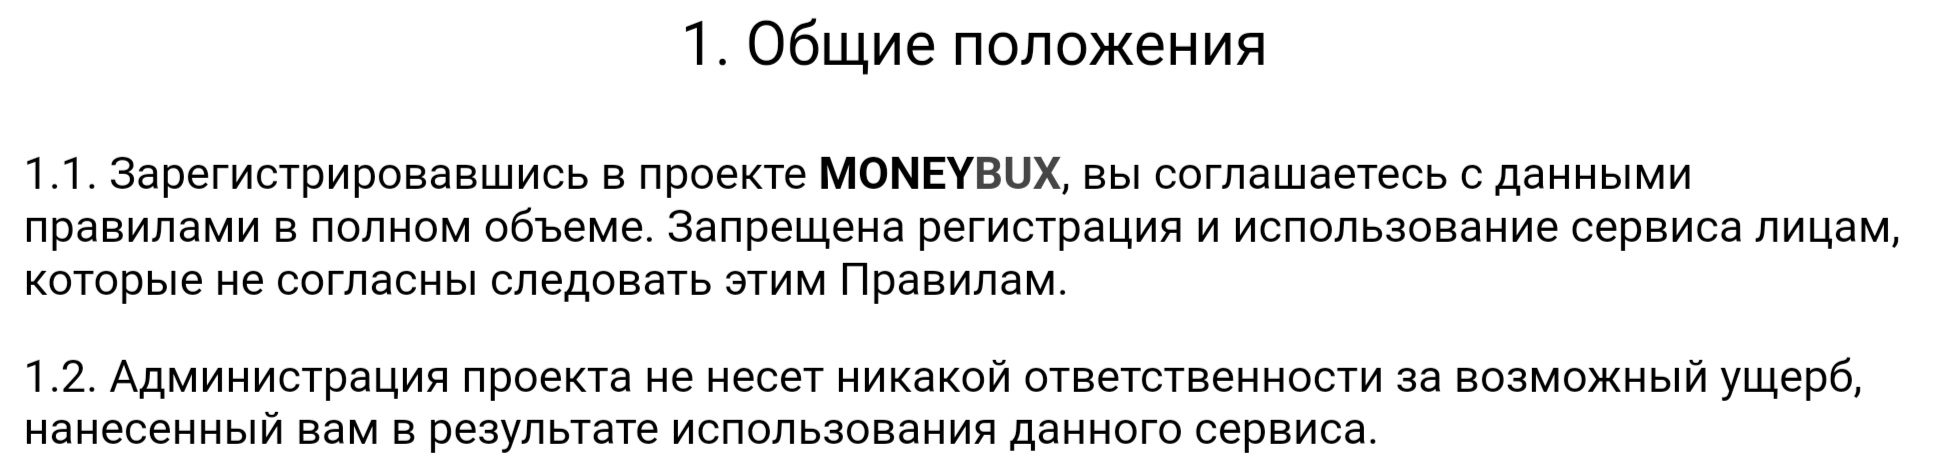 Moneybux положения